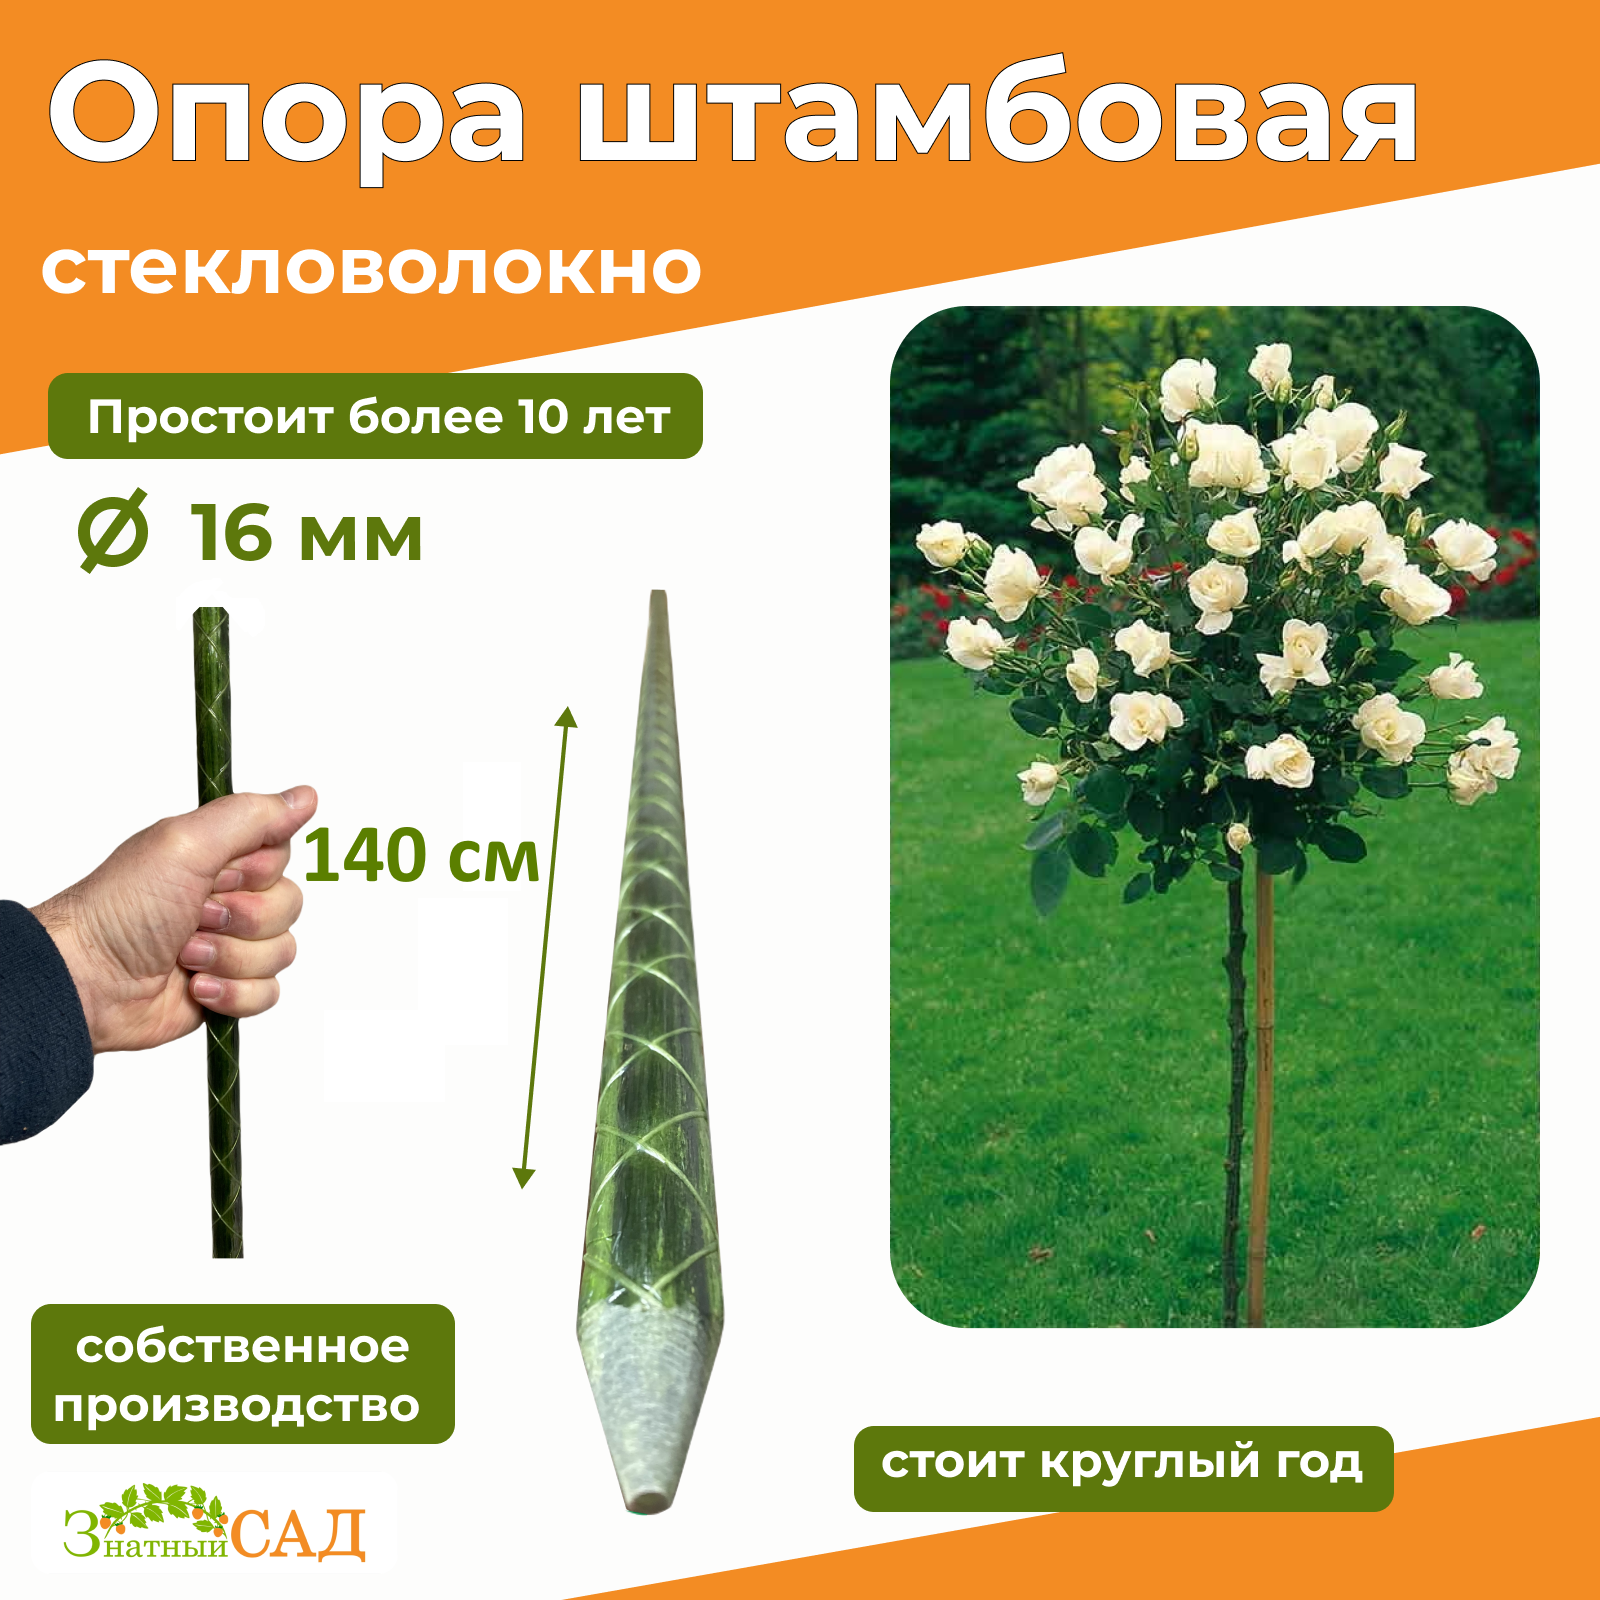 Опора для штамбовых растений "Знатный сад" 14 м/диаметр 16 мм/стекловолокно